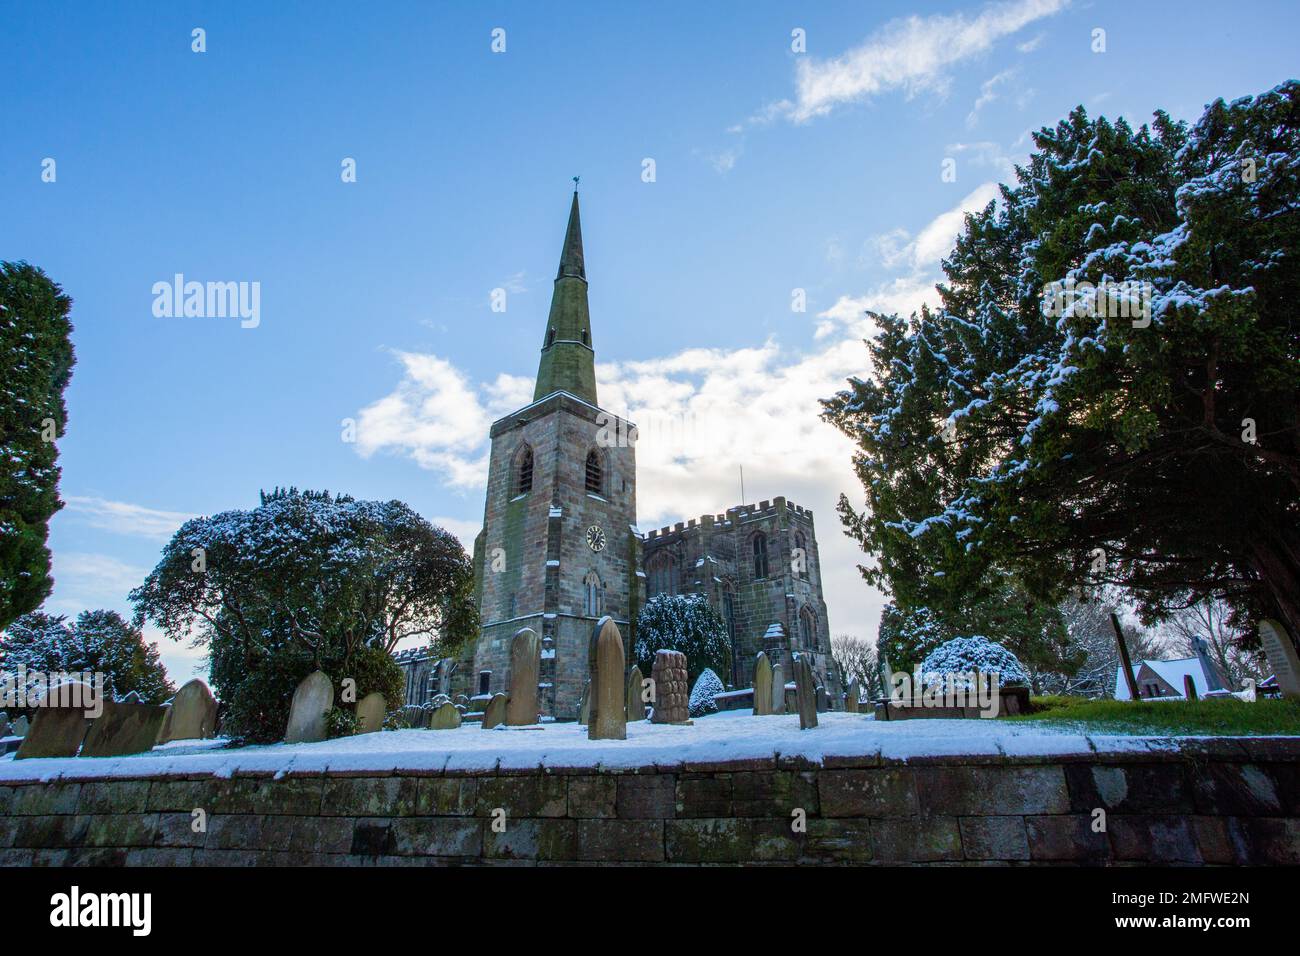 La neve copriva la chiesa parrocchiale di St Mary ad Astbury vicino a Congleton Cheshire Inghilterra dal verde villaggio in inverno Foto Stock